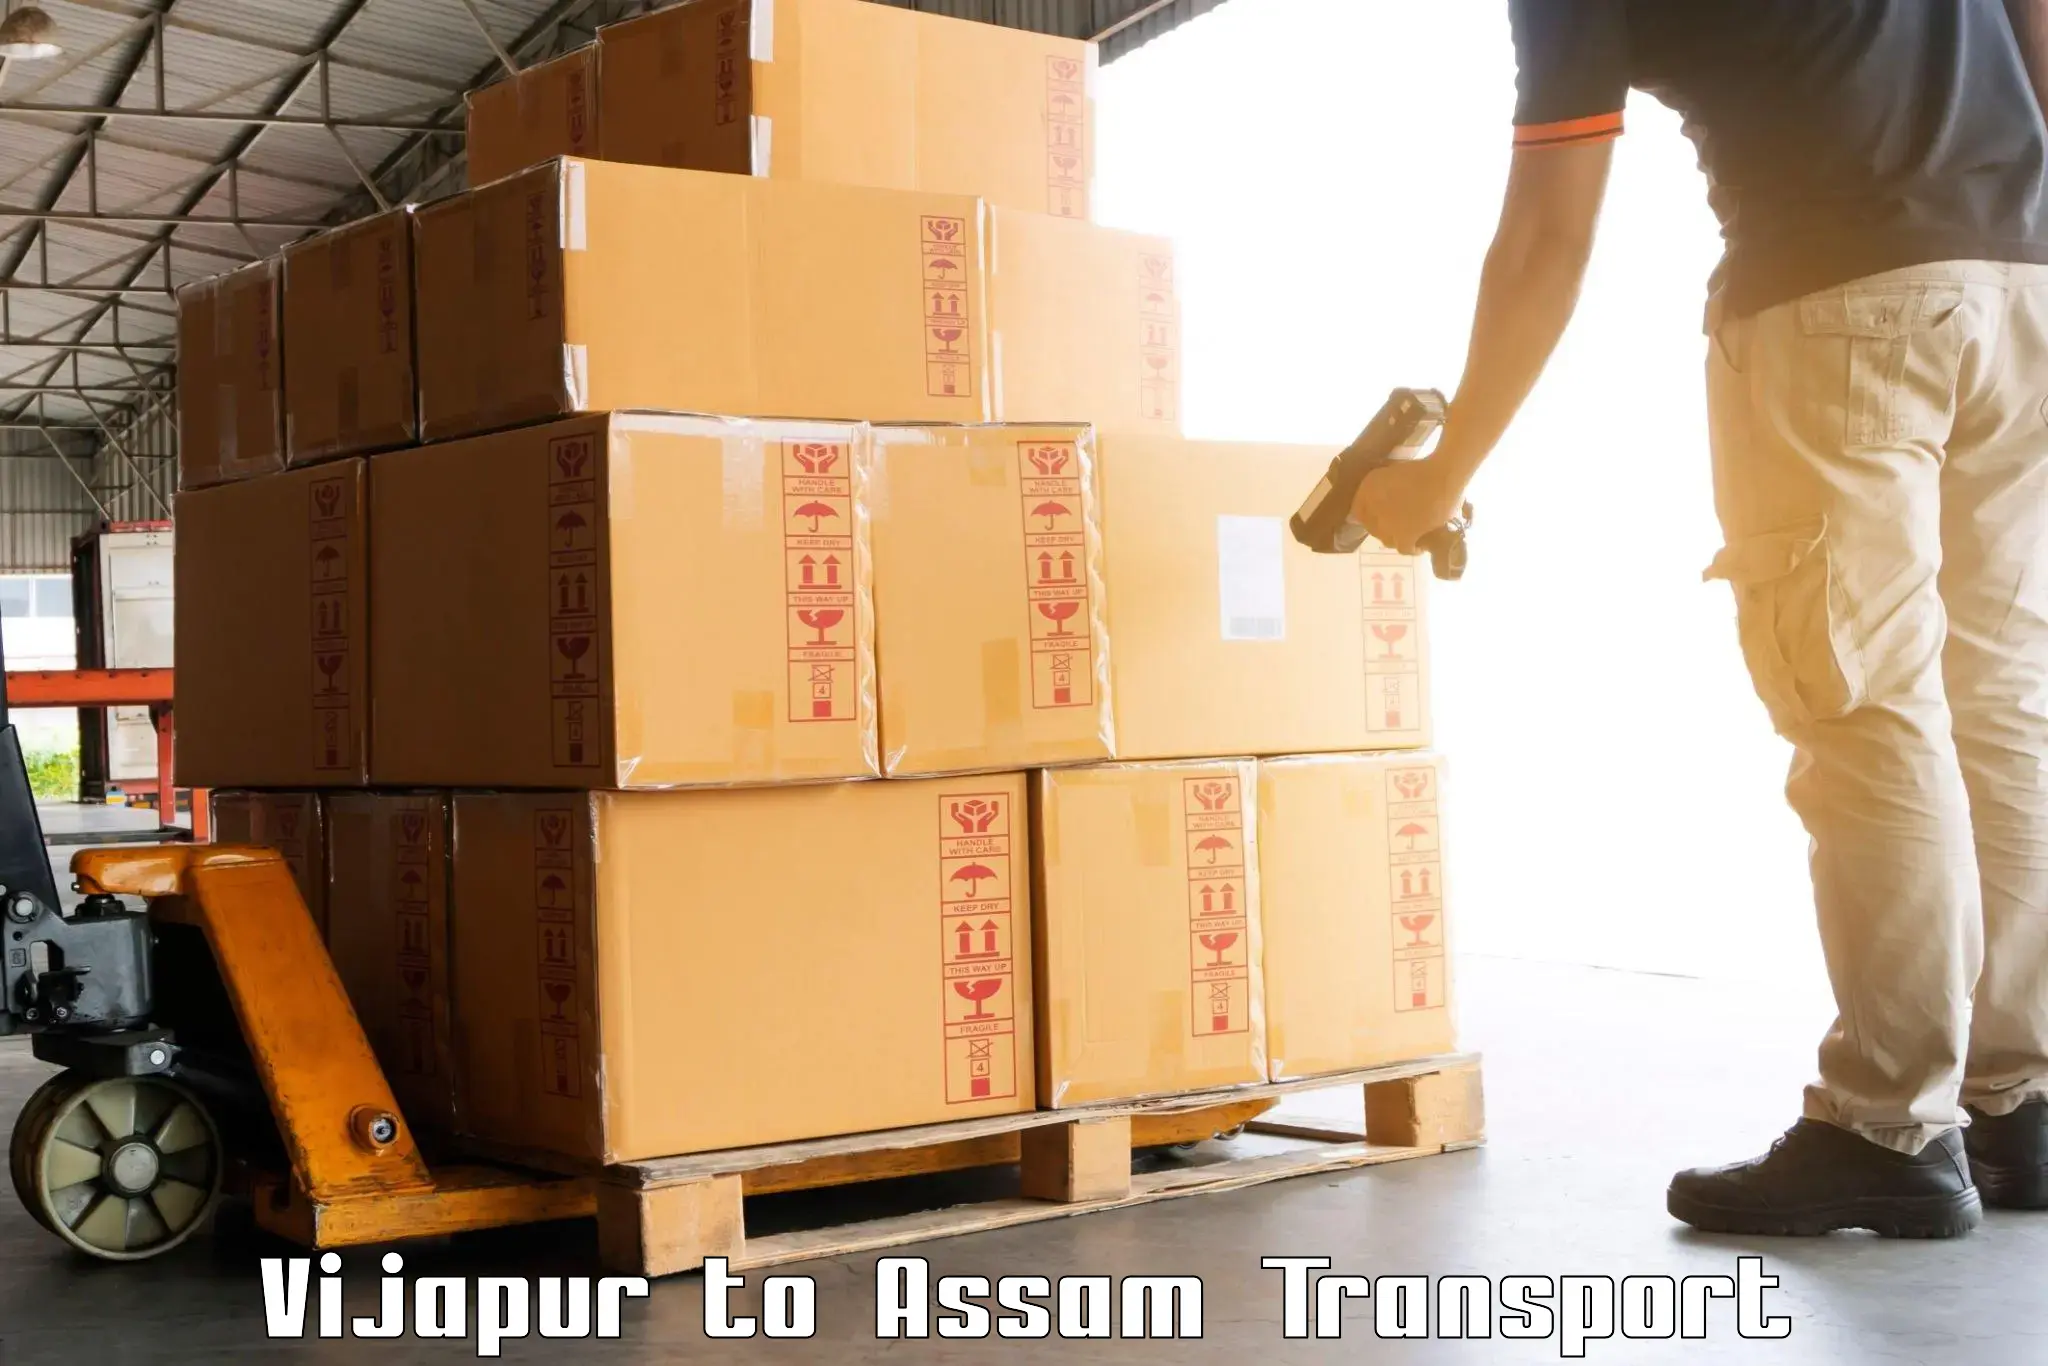 Cargo transport services Vijapur to Assam